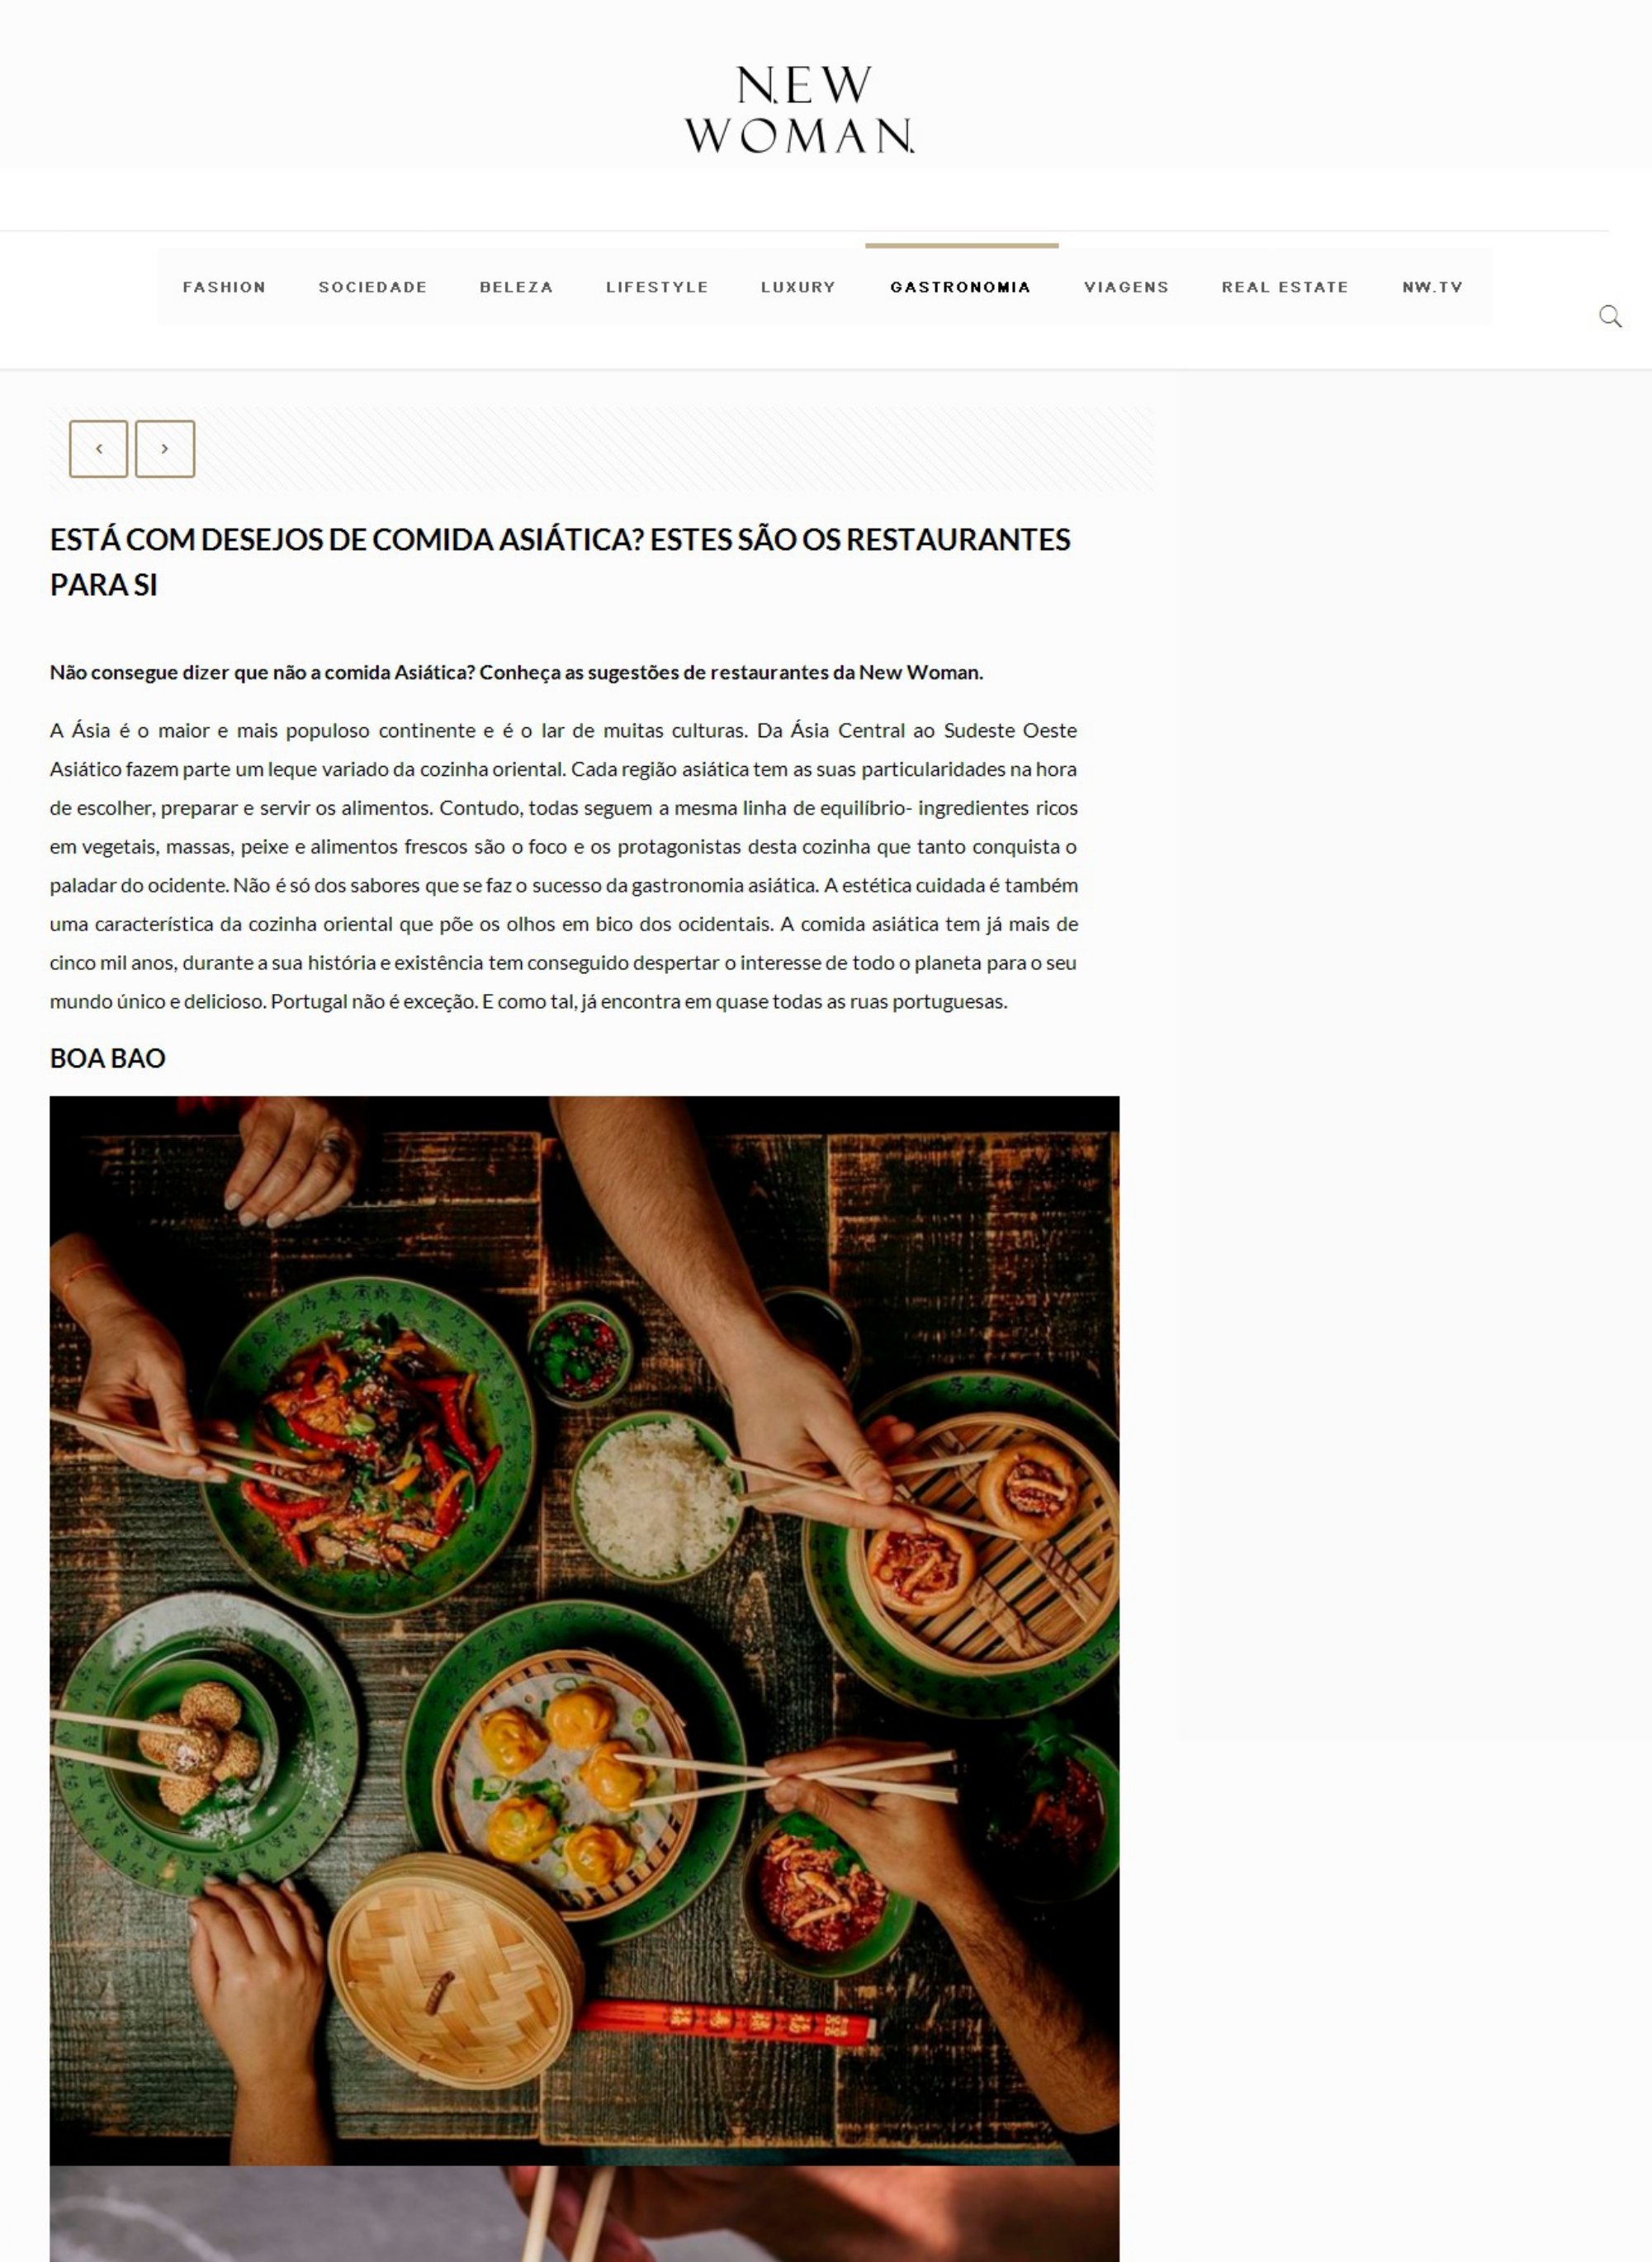 NewWoman Online_Vous avez envie de manger asiatique ? Voici les restaurants pour vous_page-0001.jpg